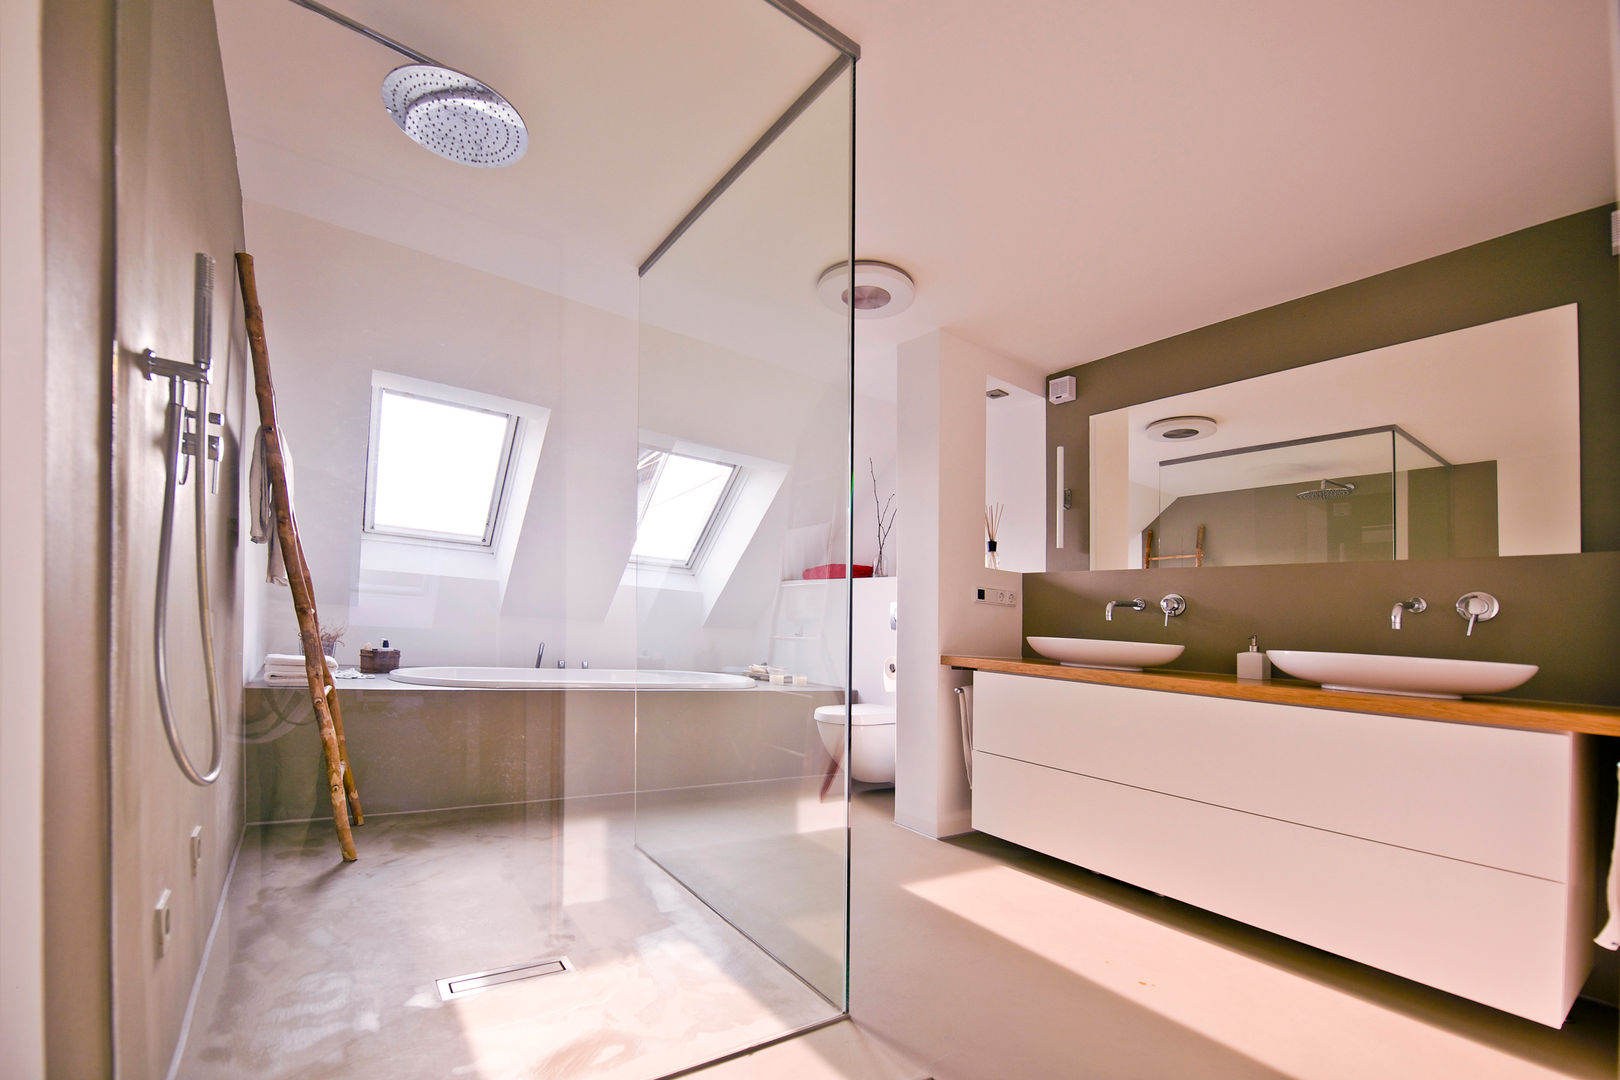 140 qm Galeriewohnung, freudenspiel - Interior Design freudenspiel - Interior Design ห้องน้ำ